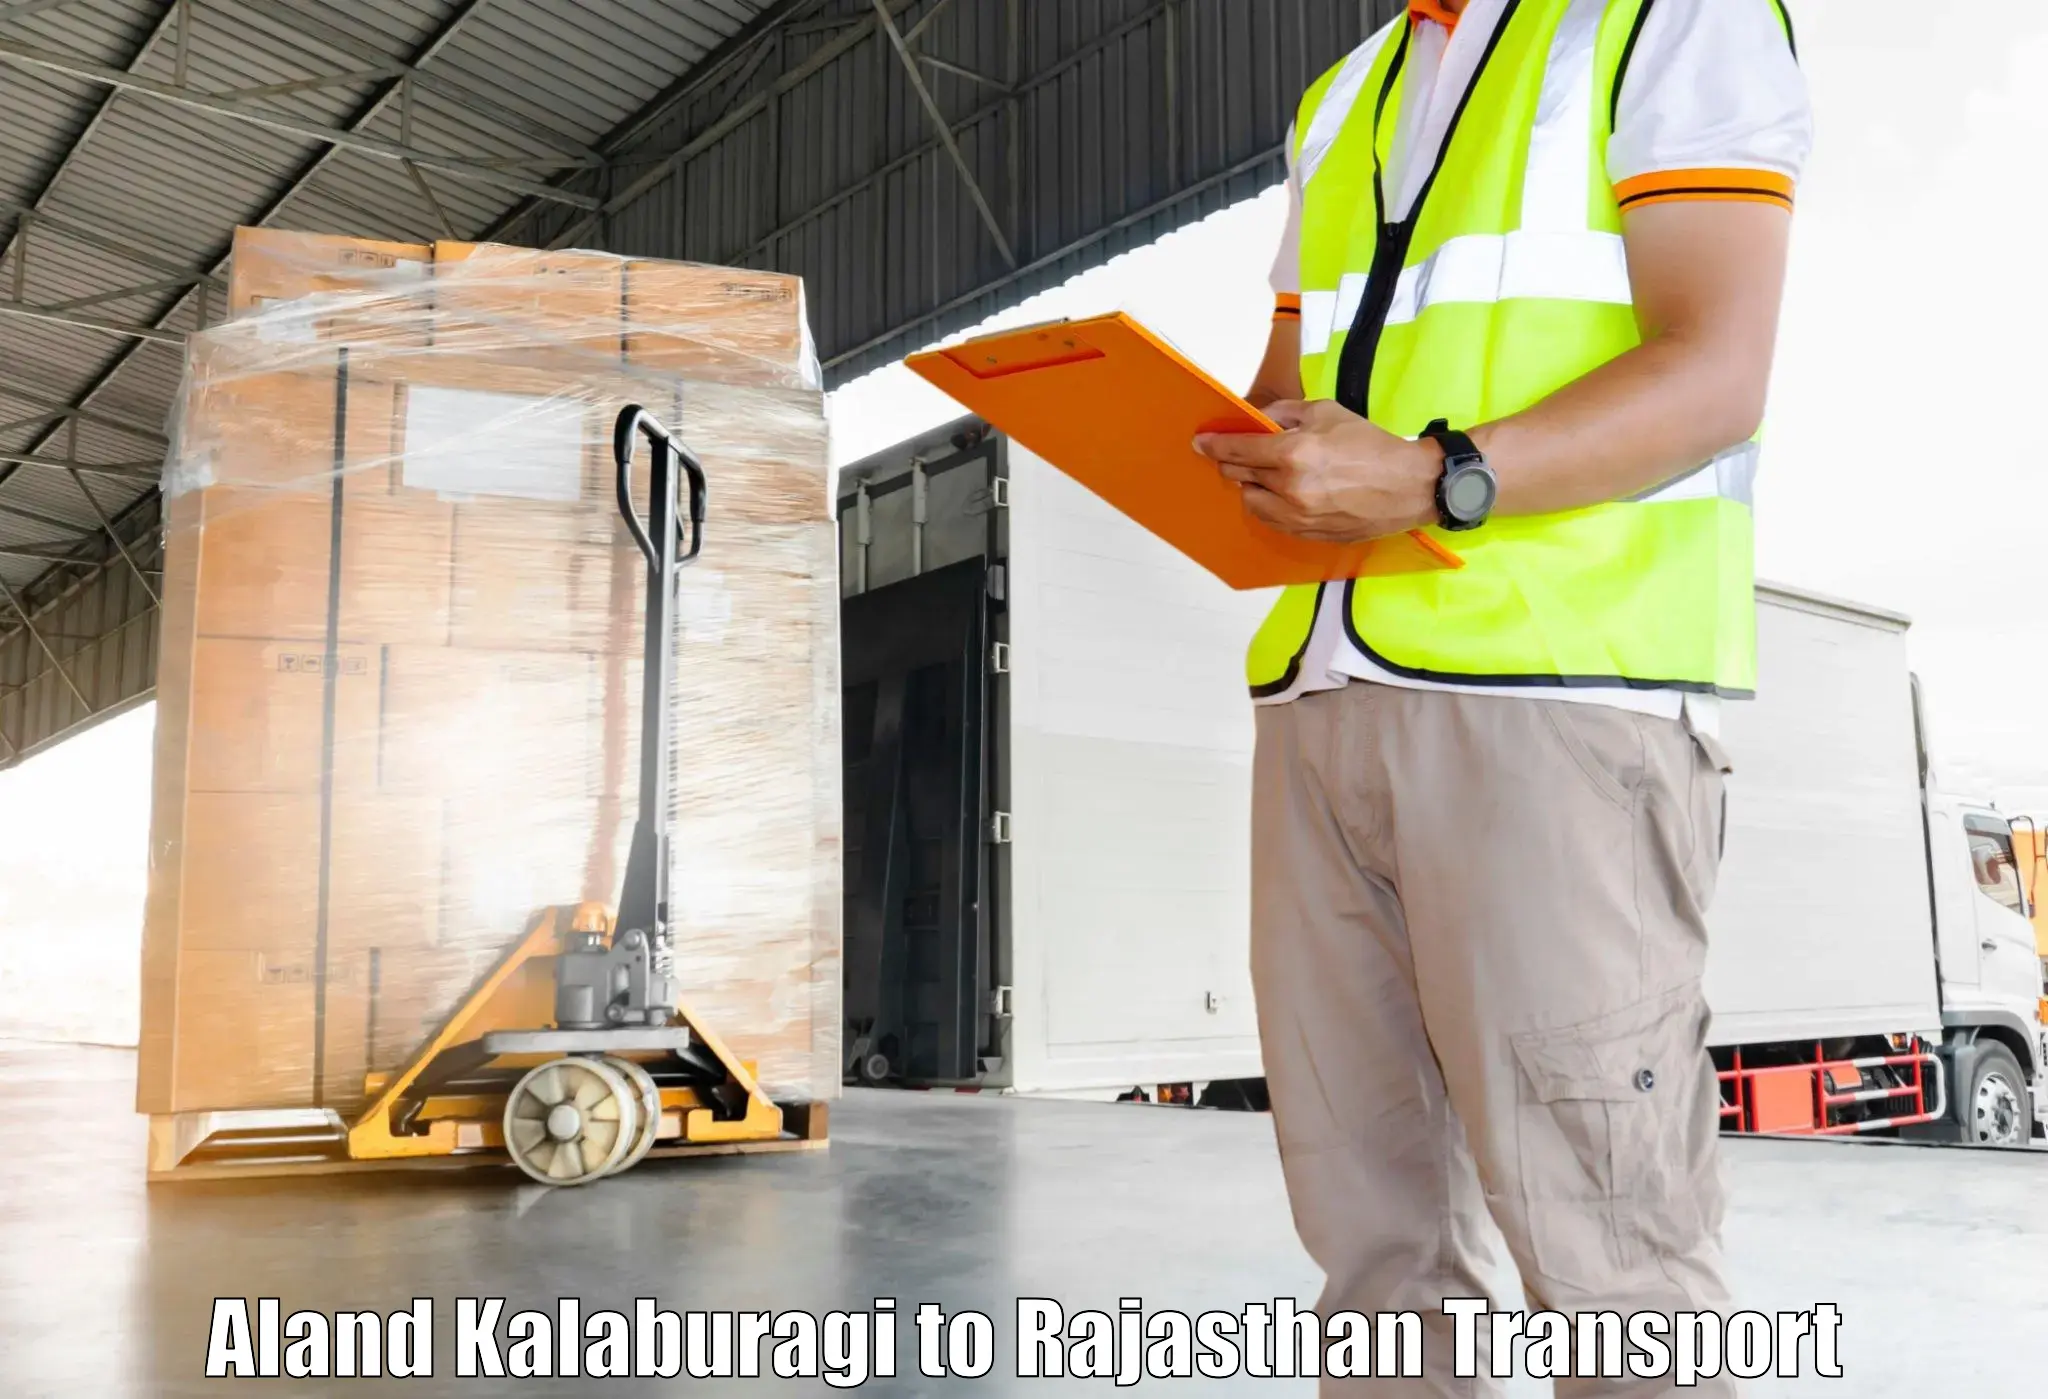 Shipping partner Aland Kalaburagi to Degana